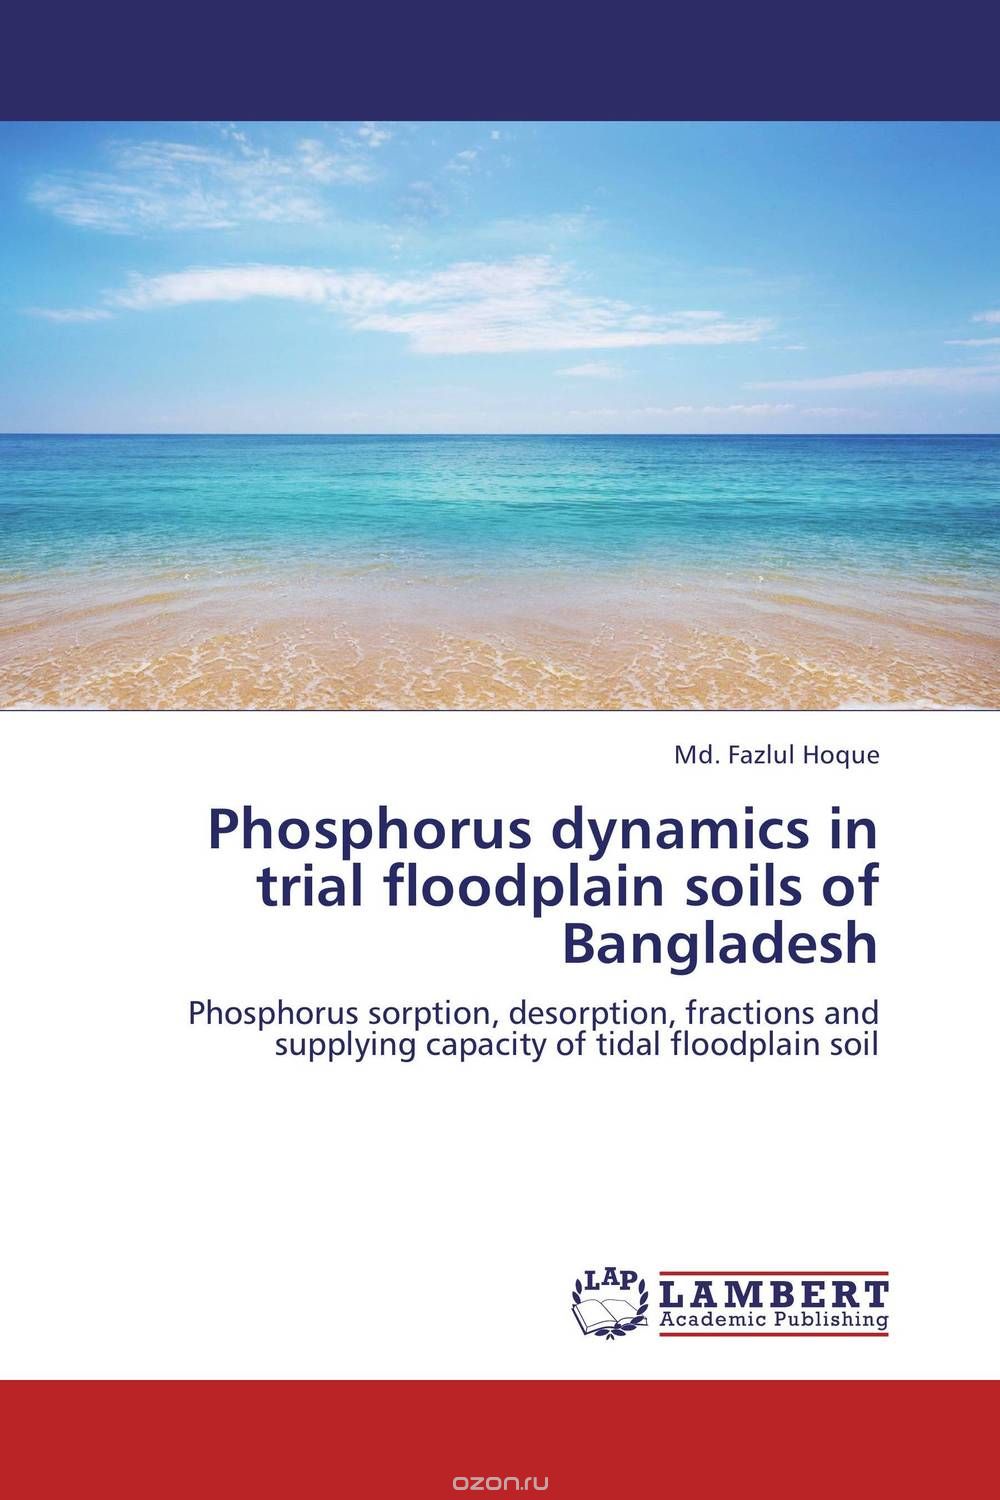 Скачать книгу "Phosphorus dynamics in trial floodplain soils of Bangladesh"